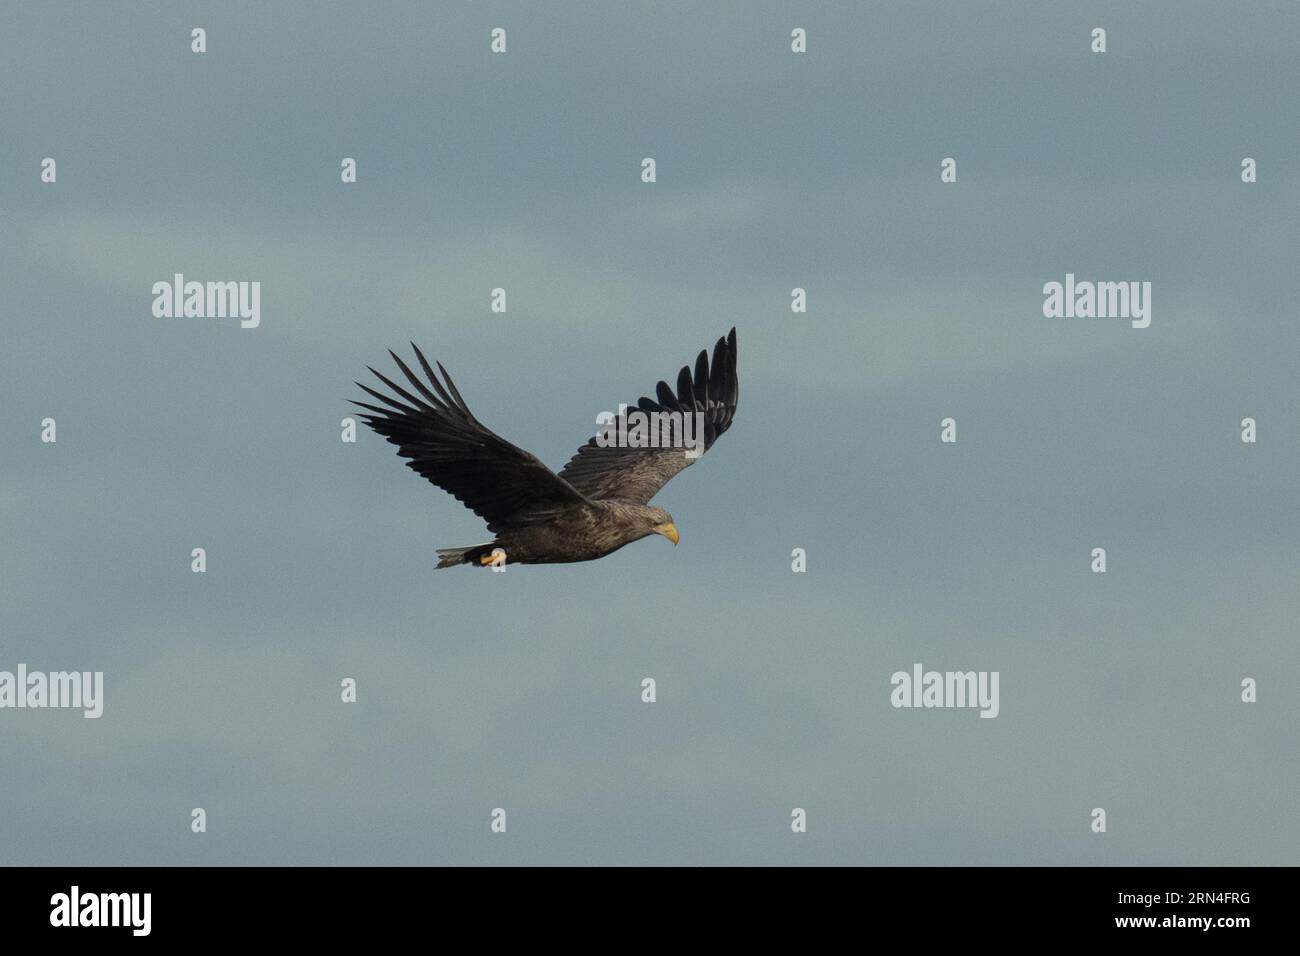 Aquila dalla coda bianca con ali aperte che volano a destra guardando il cielo blu Foto Stock